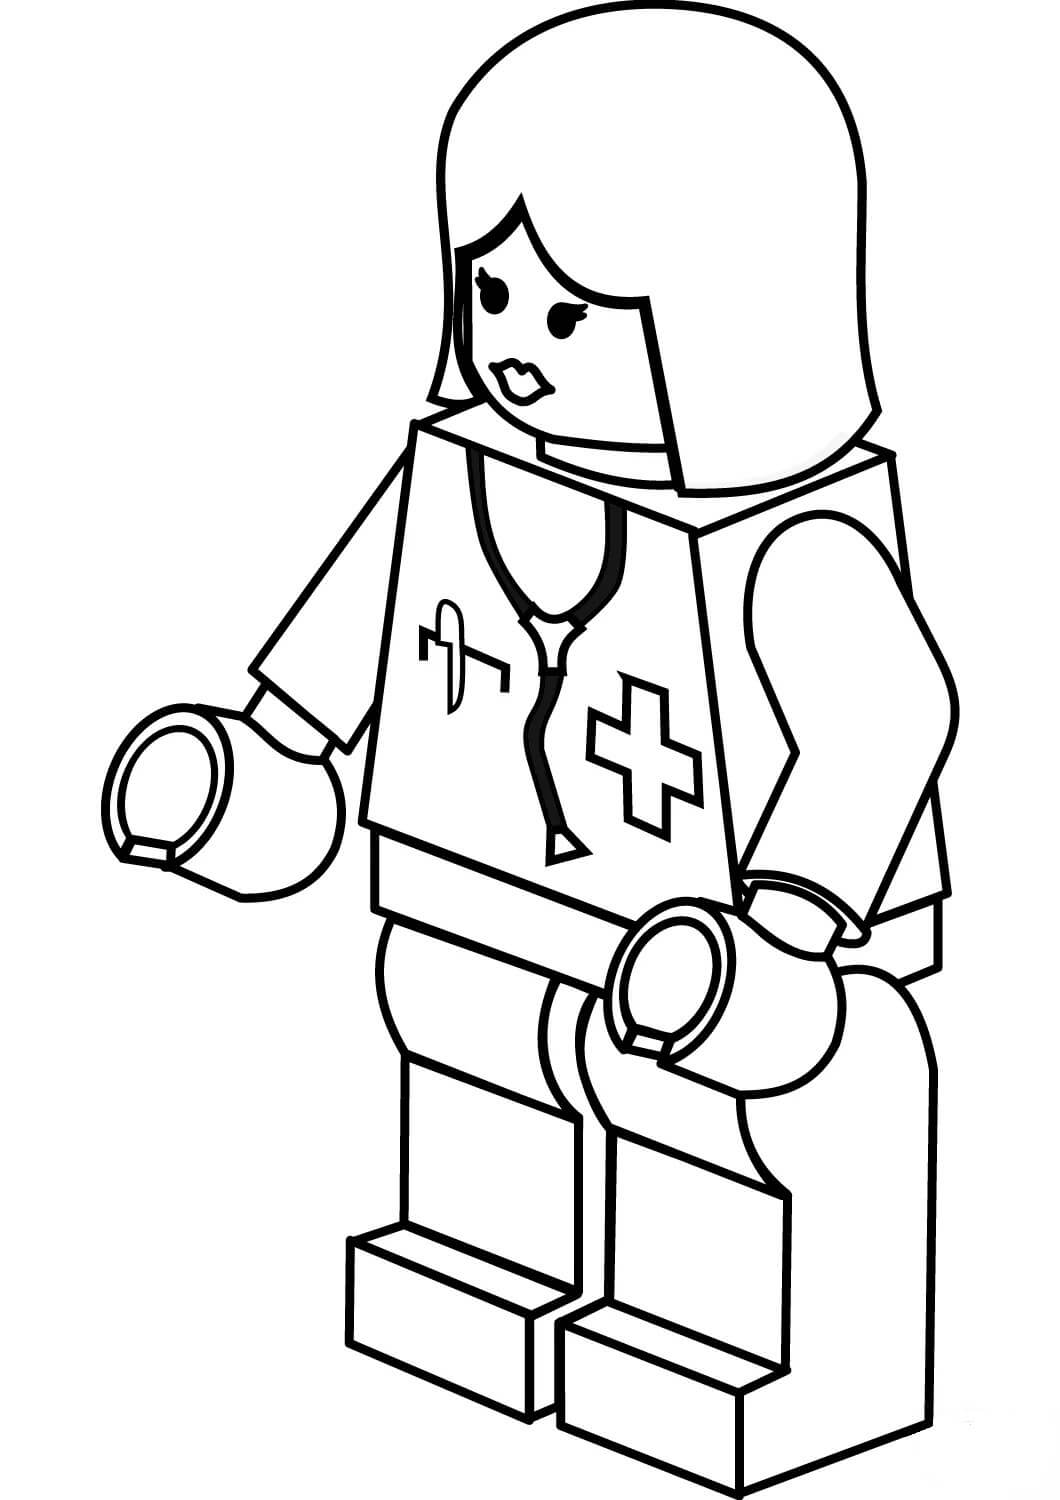 Enfermeira Lego para colorir